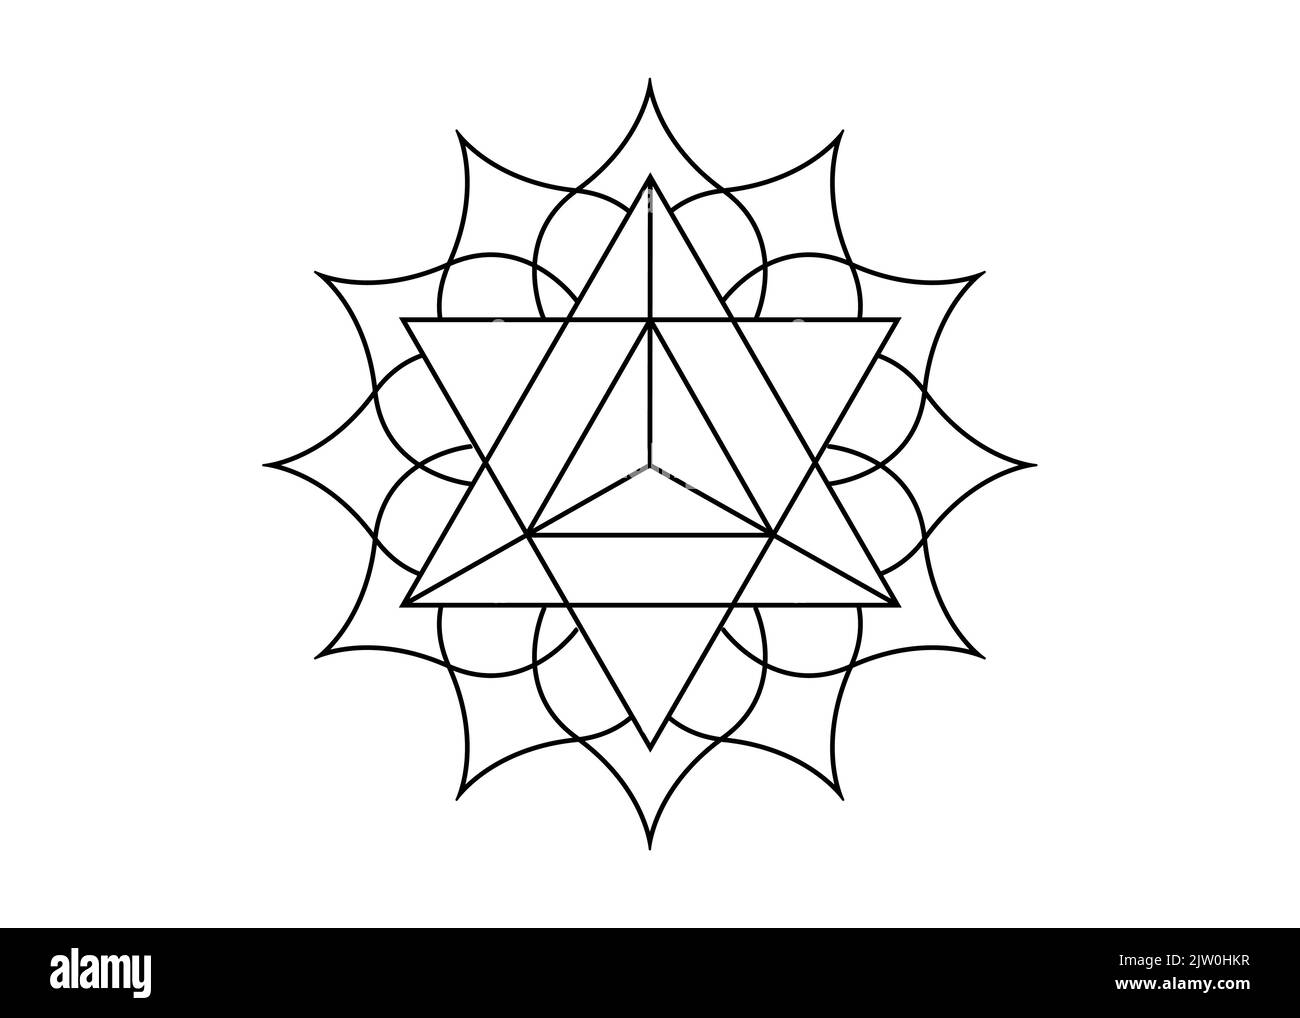 Geometria sacra, simbolo mistico della Merkabah, fiore di loto in nero tatuaggio linea arte, logo magico geometrico mandala disegno, vettore isolato su bianco Illustrazione Vettoriale